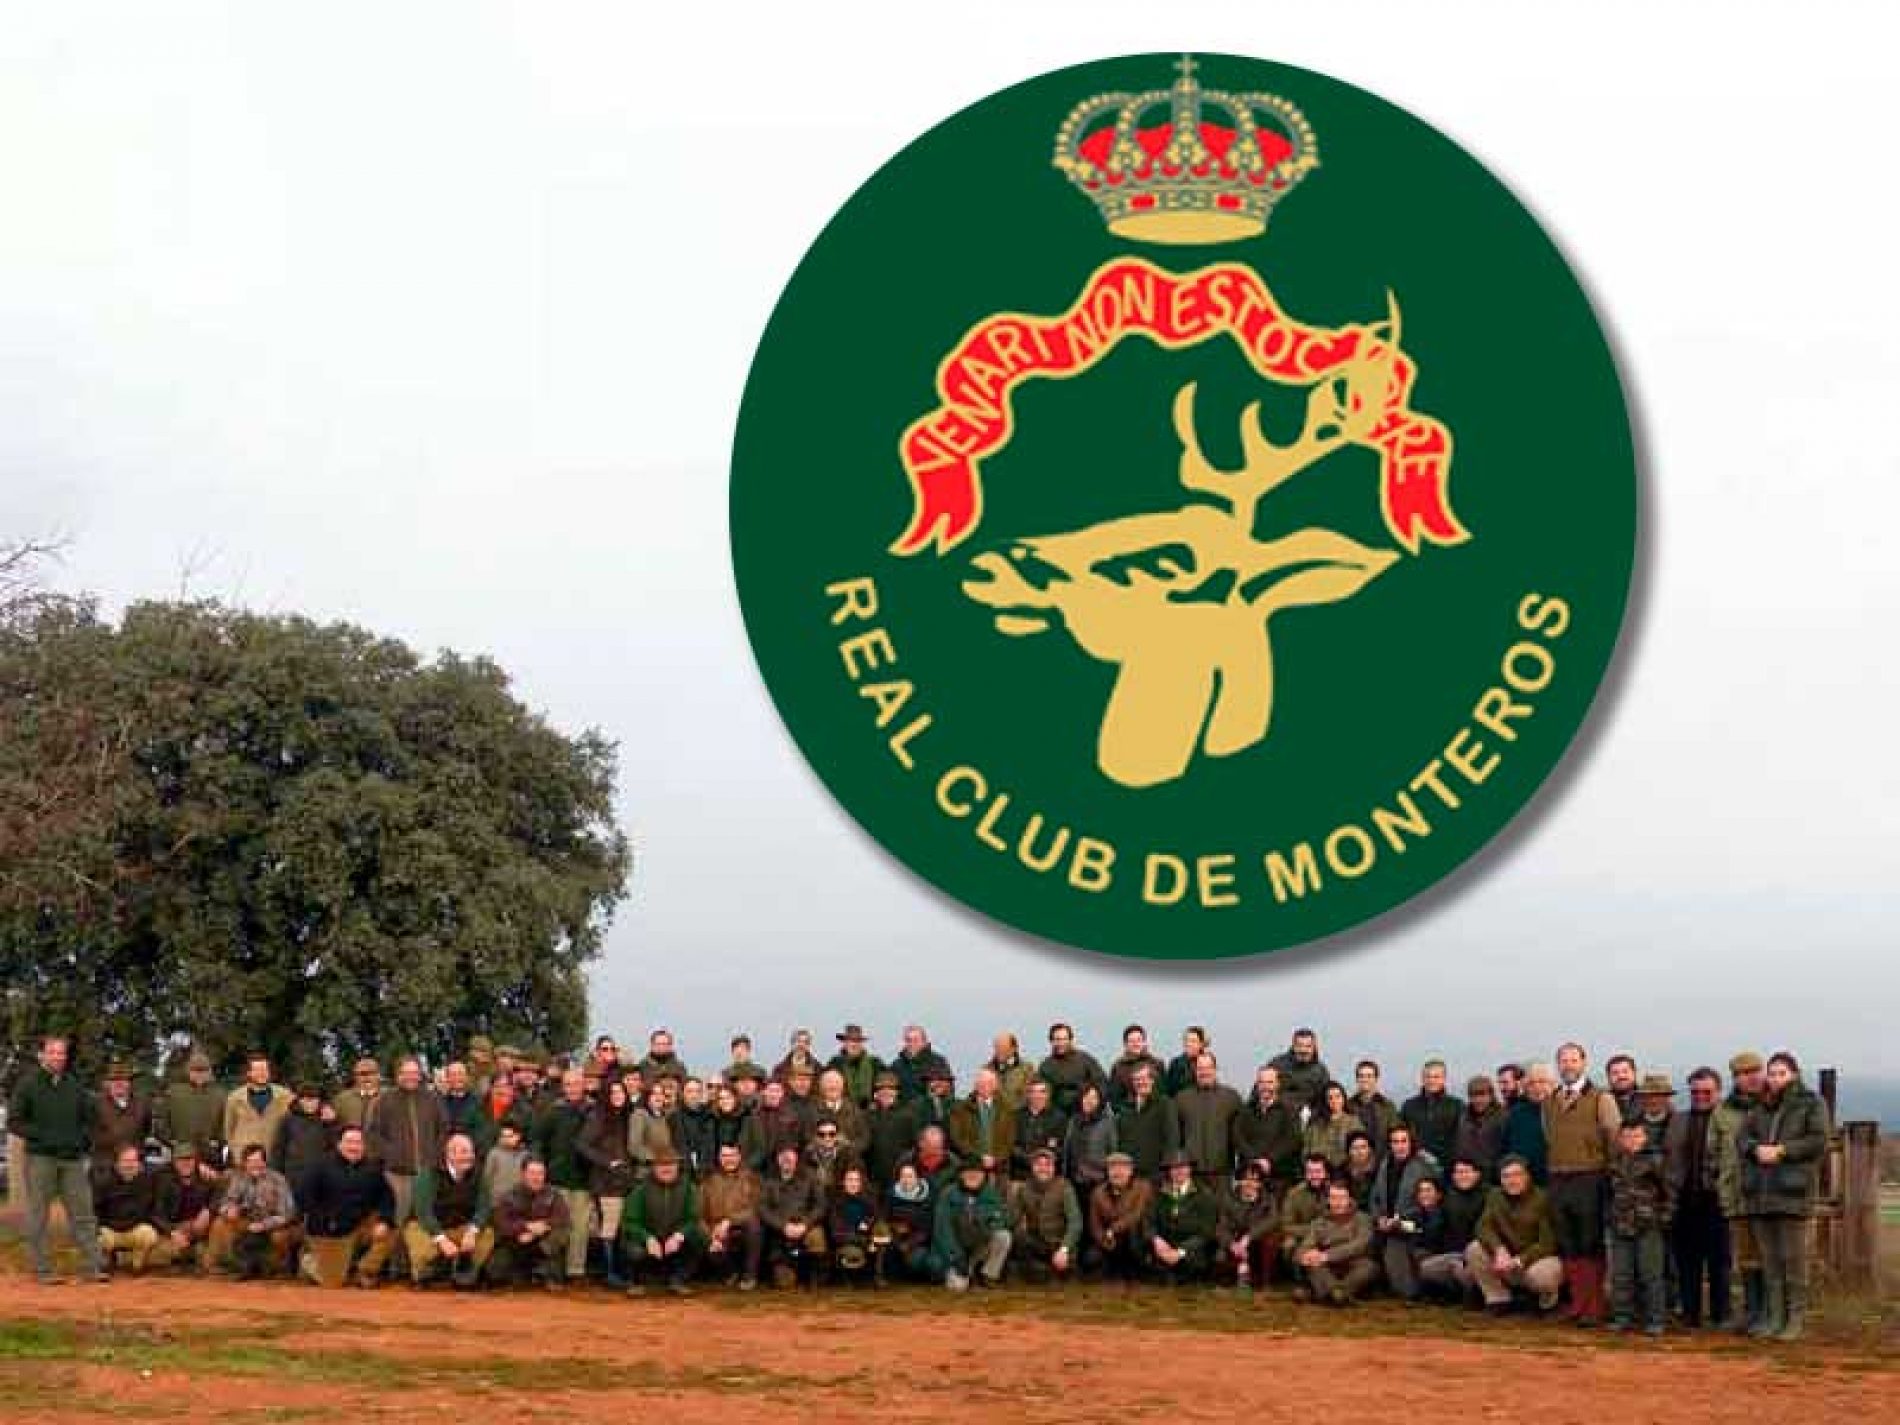 El Real Club de Monteros entregará su premios durante la celebración en Madrid de su 60 aniversario